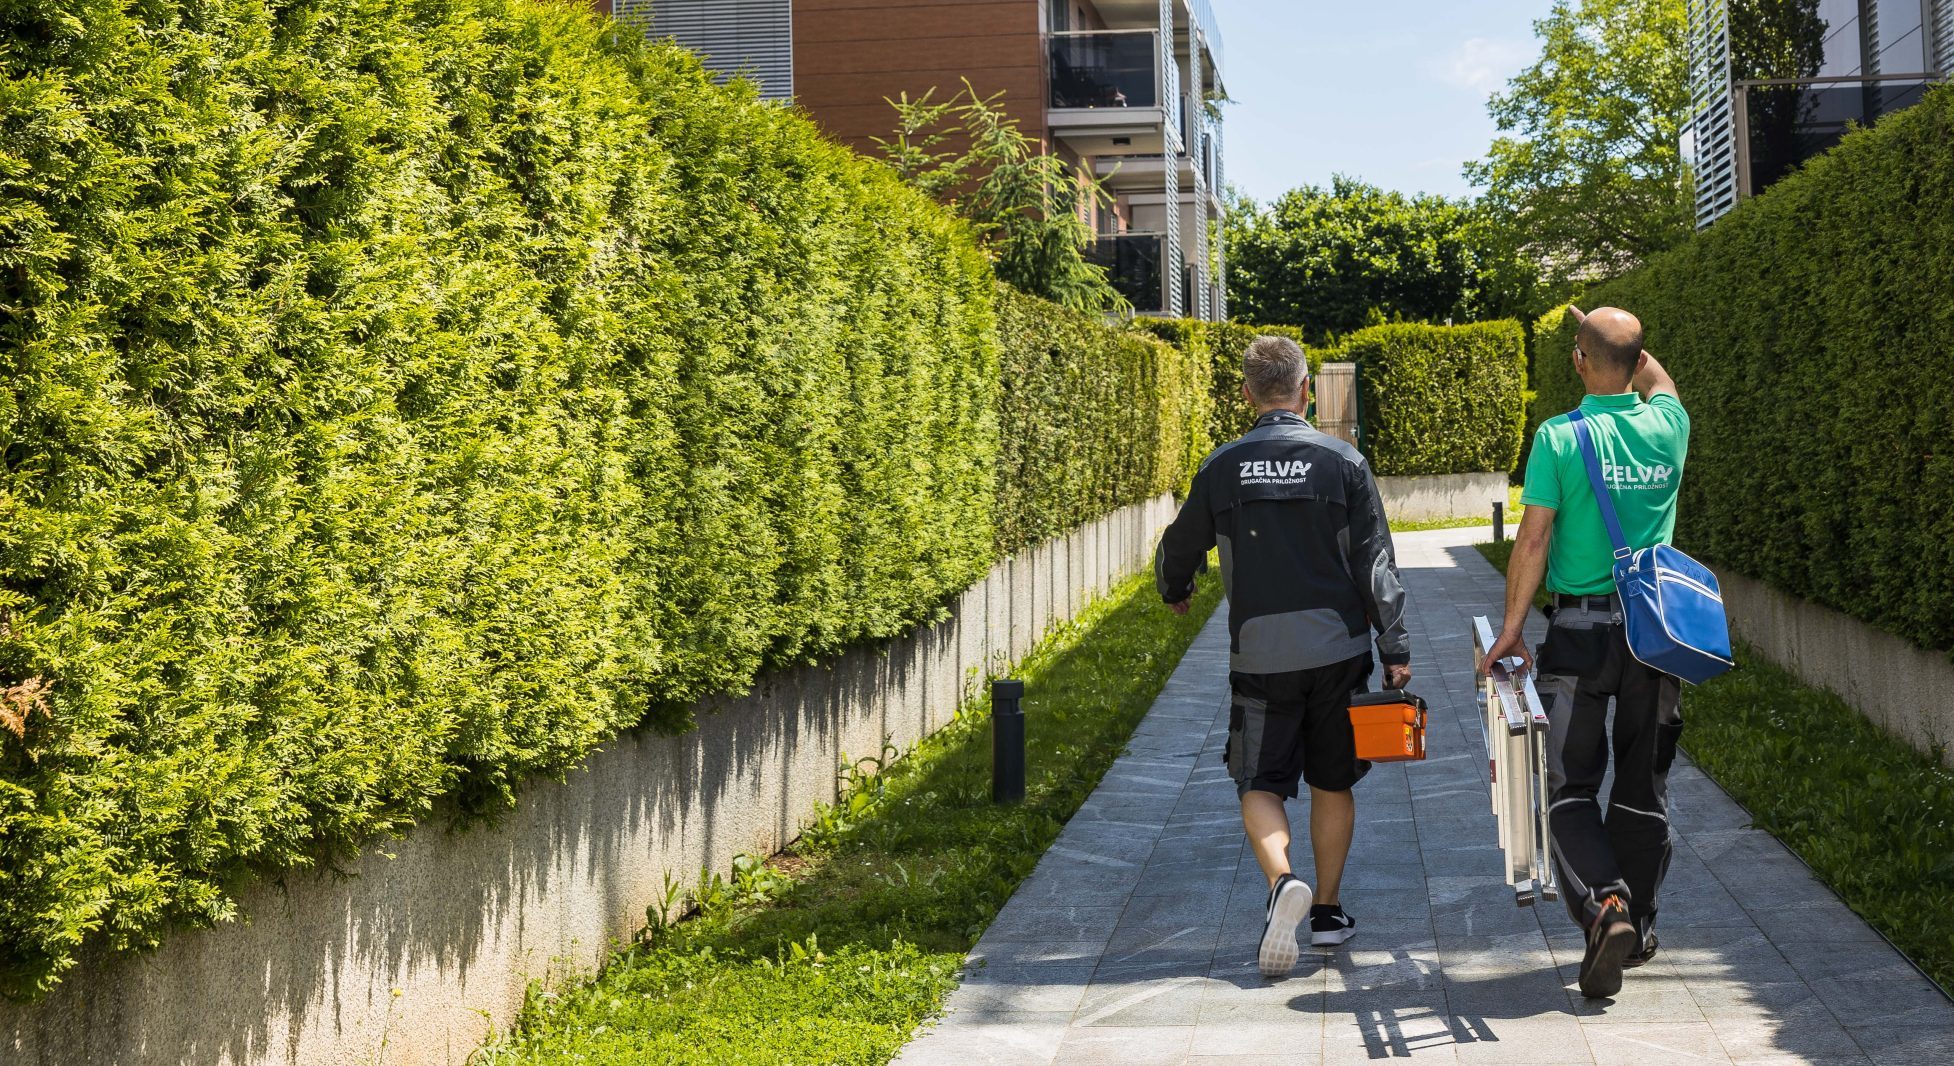 Dva delavca v uniformah na poti prosti stanovanjski stavbi predstavljata Tehnične storitve.